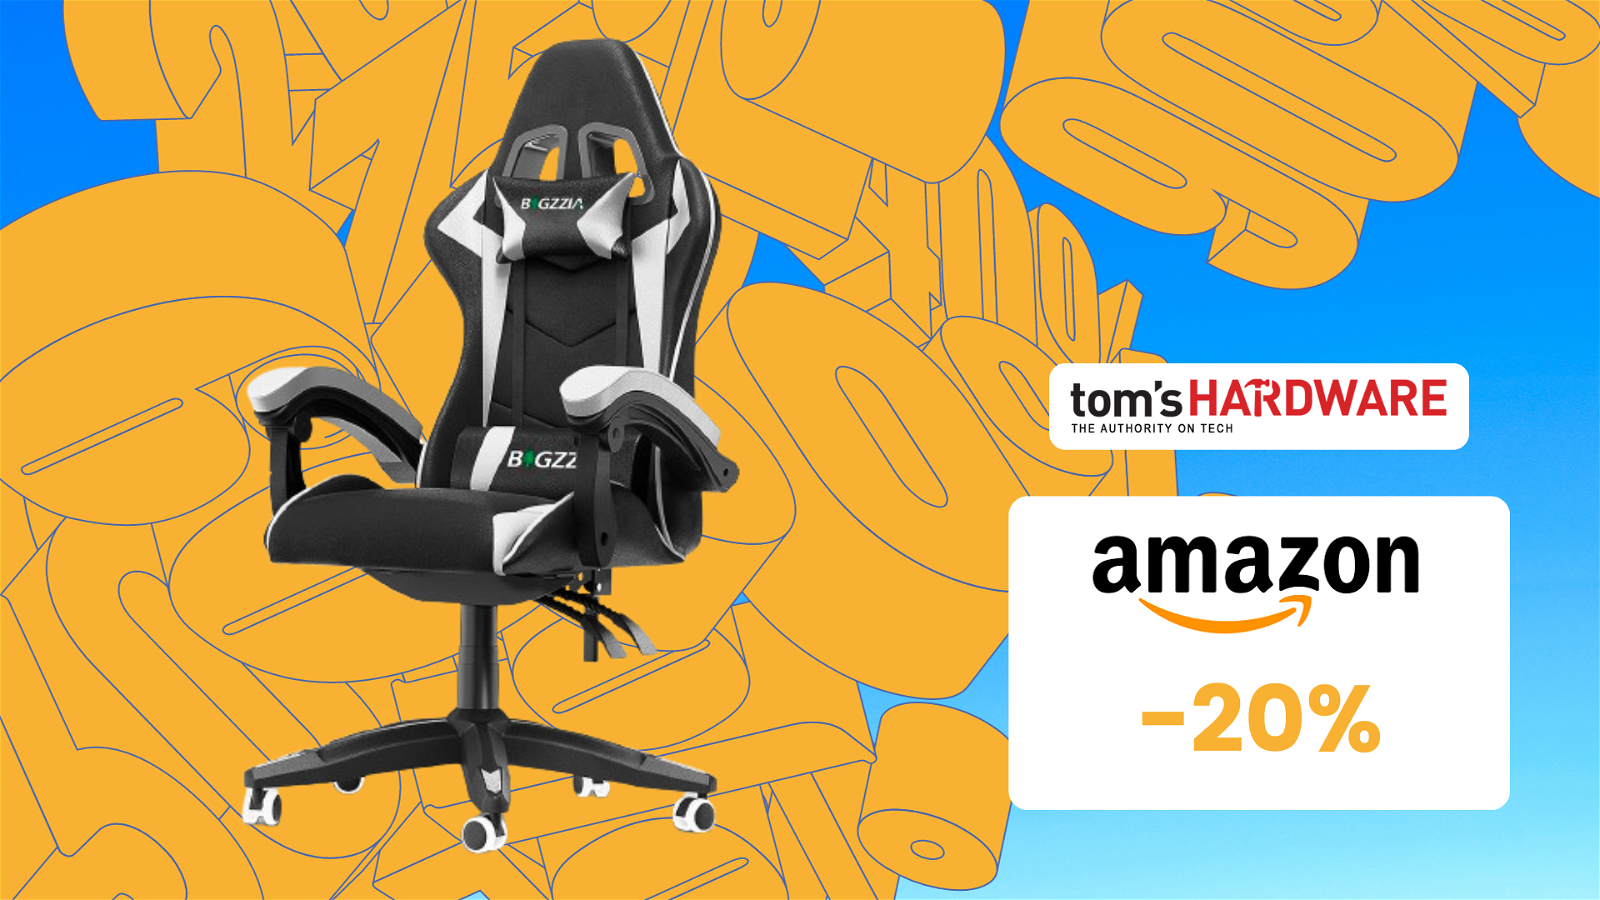 Immagine di Questa sedia da gaming è la più venduta su Amazon ed è in sconto del 20%!